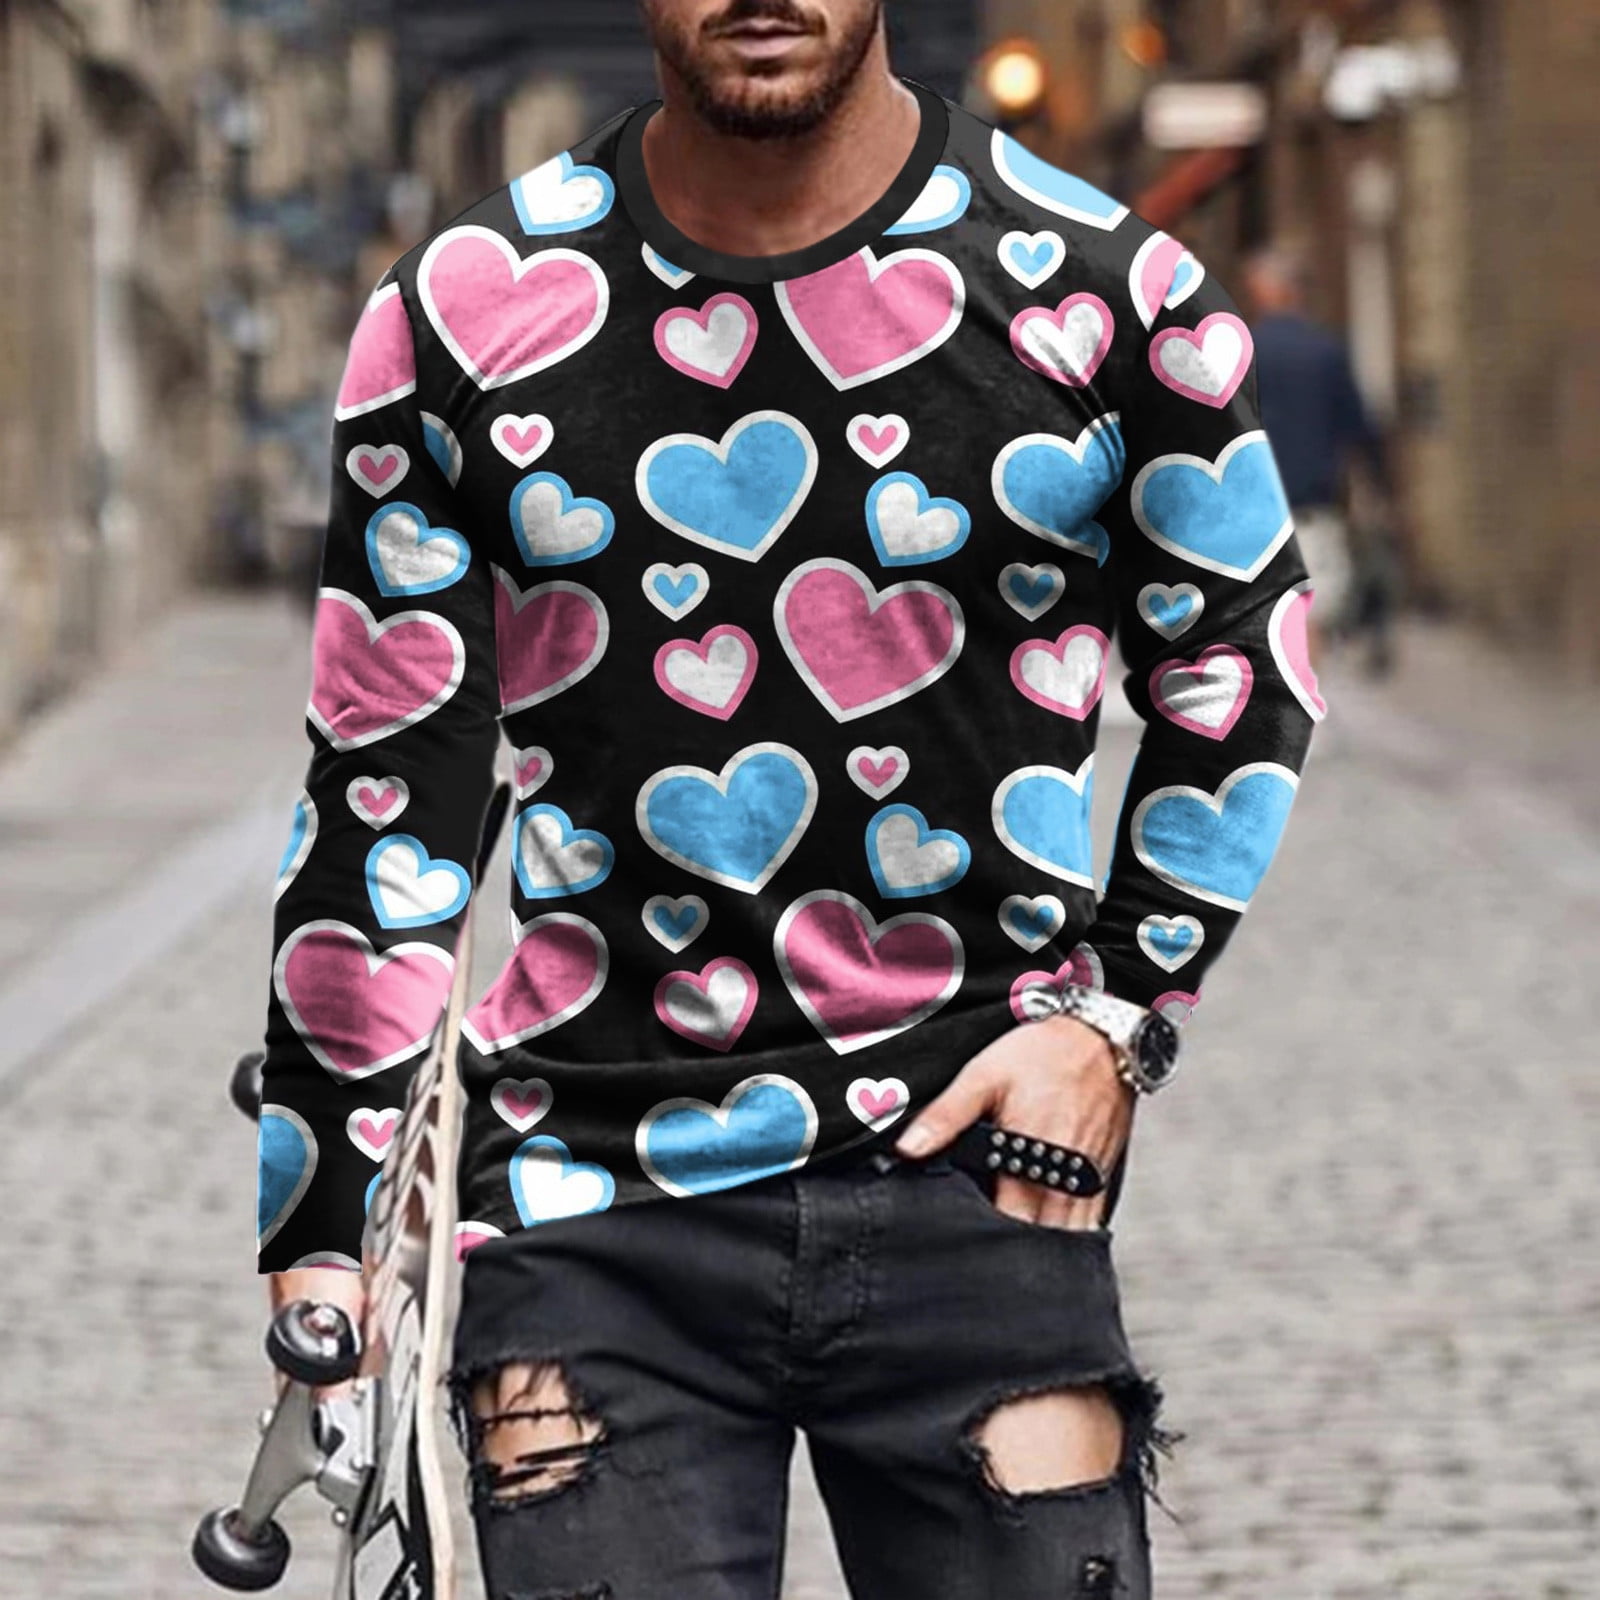 Louis Vuitton Graffiti Regular Fit Button-Up Striped Men Shirt